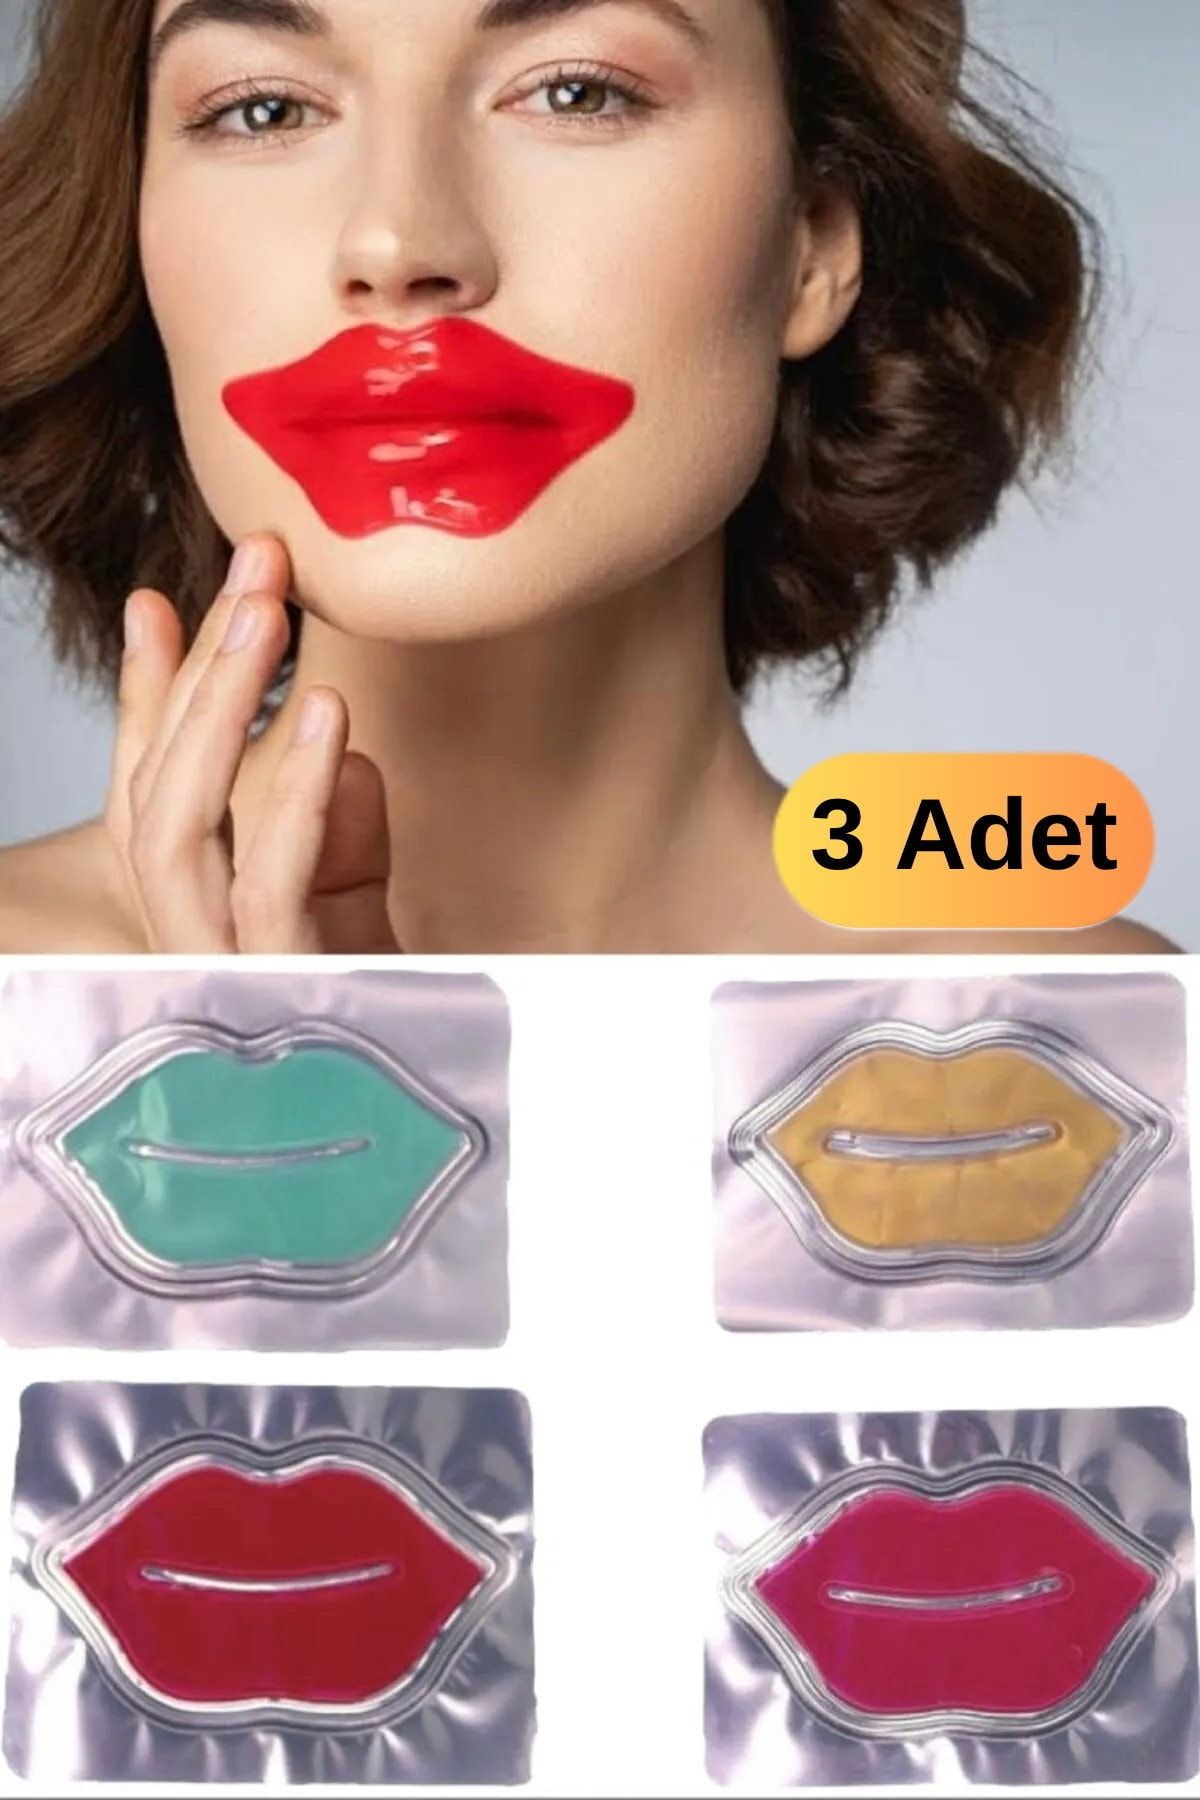 Utelips 3 Adet Yaşlanma Karşıtı Besleyici Hidrojen Içerikli Günlük Peeling 8gr Jel Maske Make Up Kadın Bakım